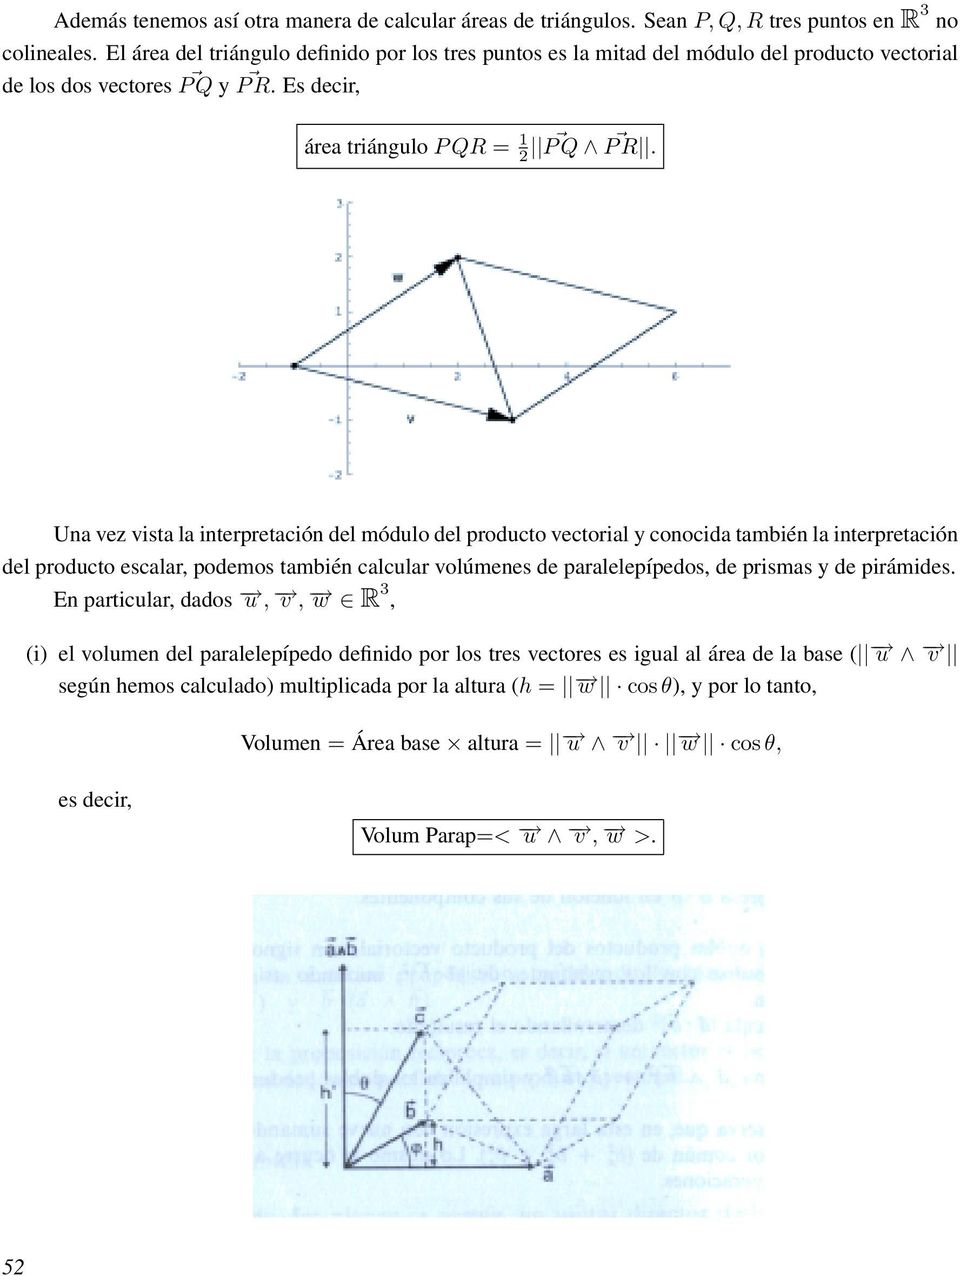 Una vez vista la interpretación del módulo del producto vectorial y conocida también la interpretación del producto escalar, podemos también calcular volúmenes de paralelepípedos, de prismas y